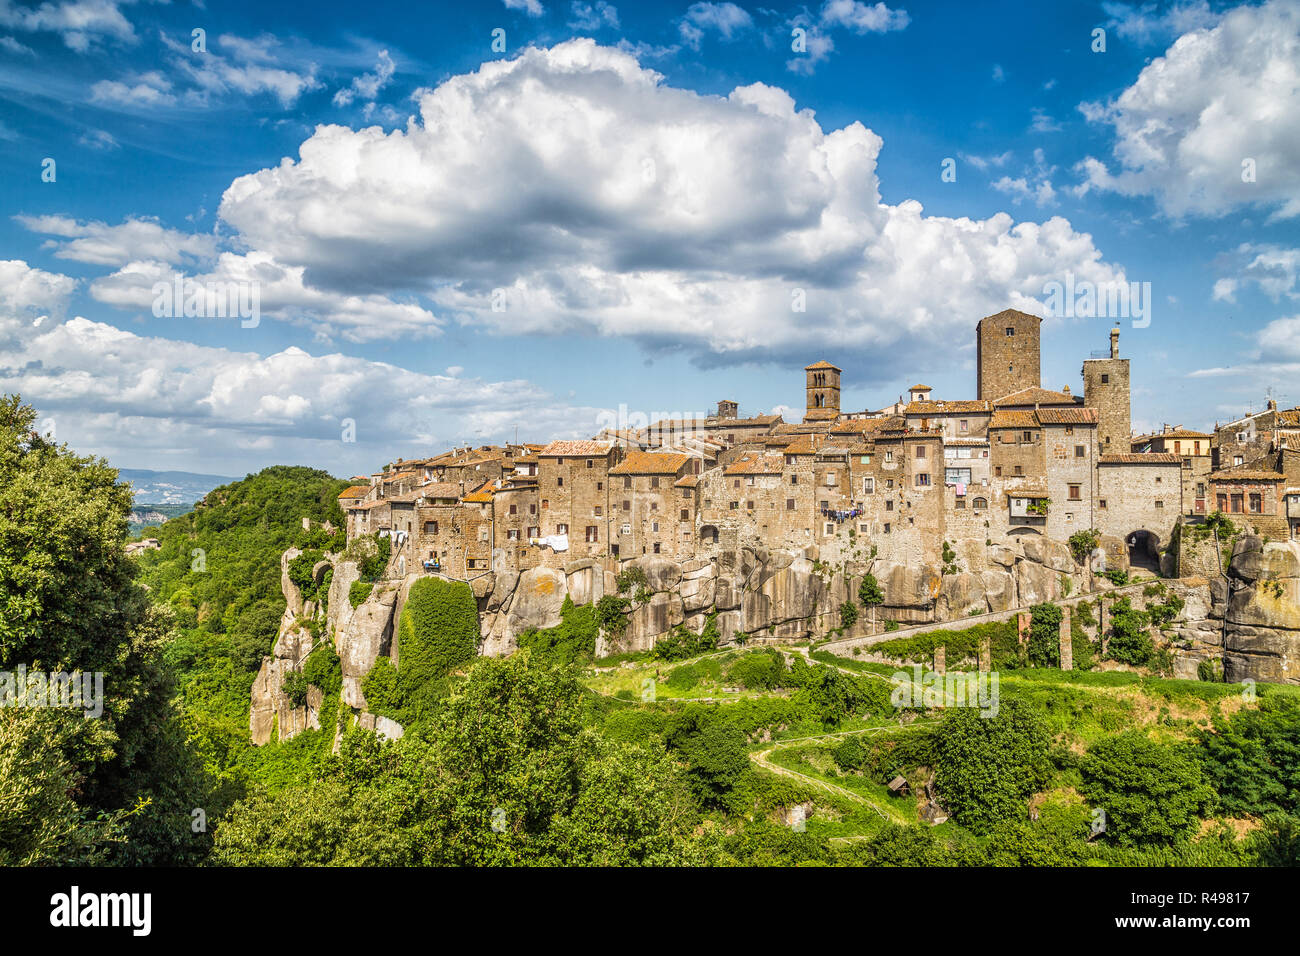 Bellissima vista della città medievale di Vitorchiano con splendide cloudscape, provincia di Viterbo, Lazio, Italia Foto Stock